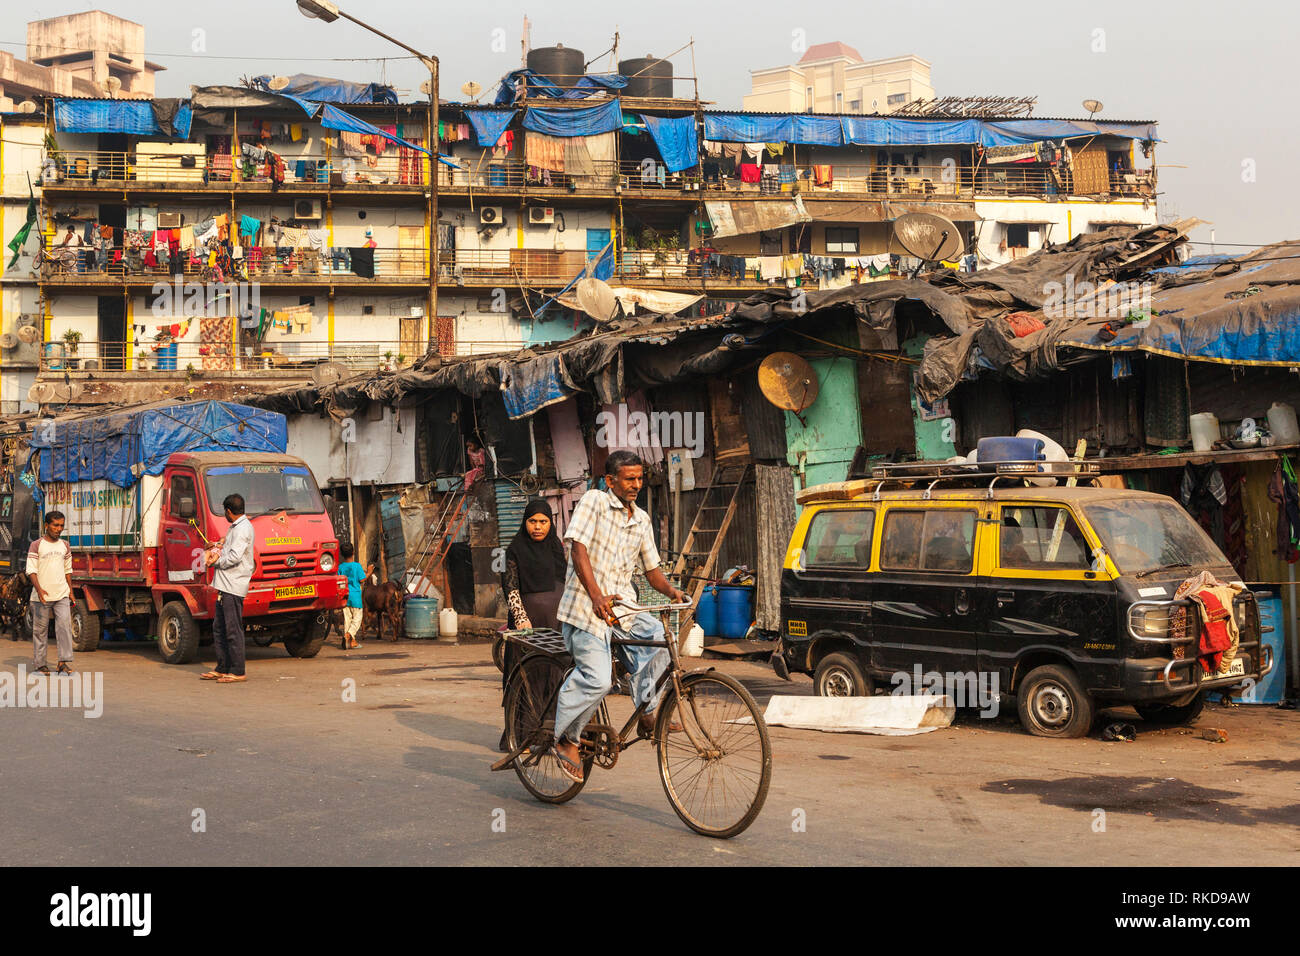 slums in Mumbai, India Stock Photo